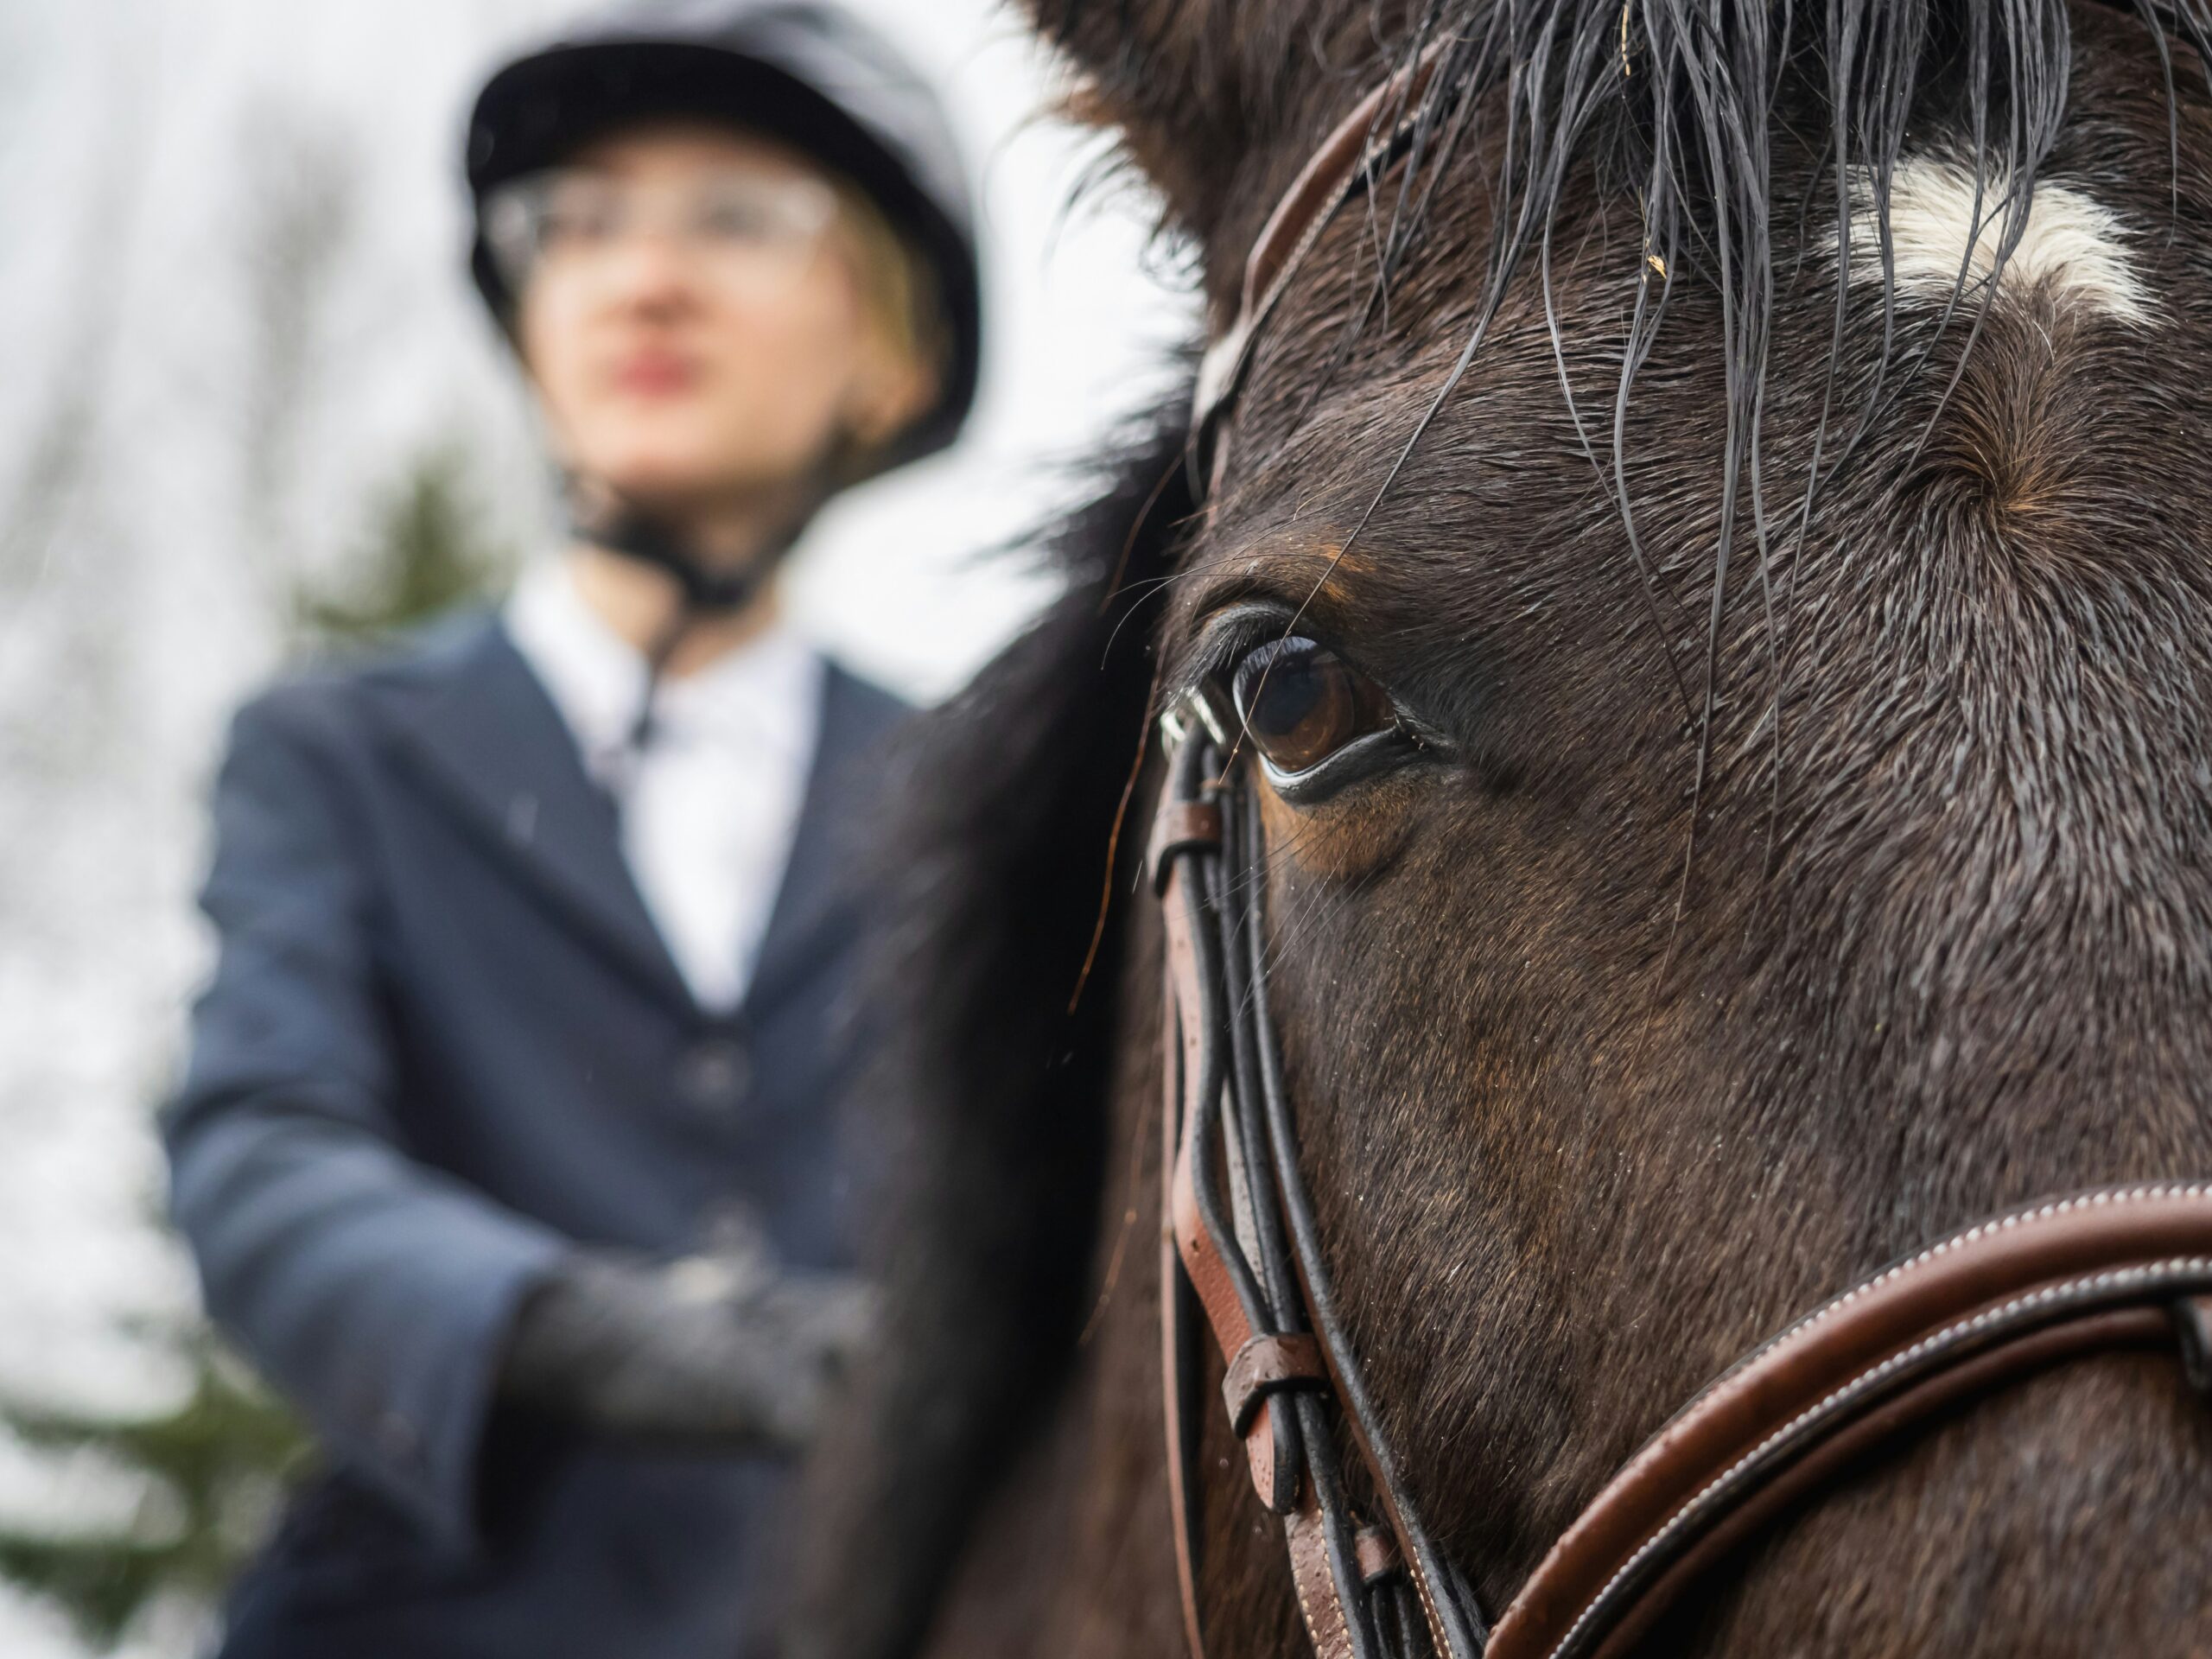 découvrez les meilleurs centres équestres pour pratiquer l'équitation et profiter d'activités équestres diverses. trouvez des installations de qualité près de chez vous et vivez des expériences uniques avec les chevaux.